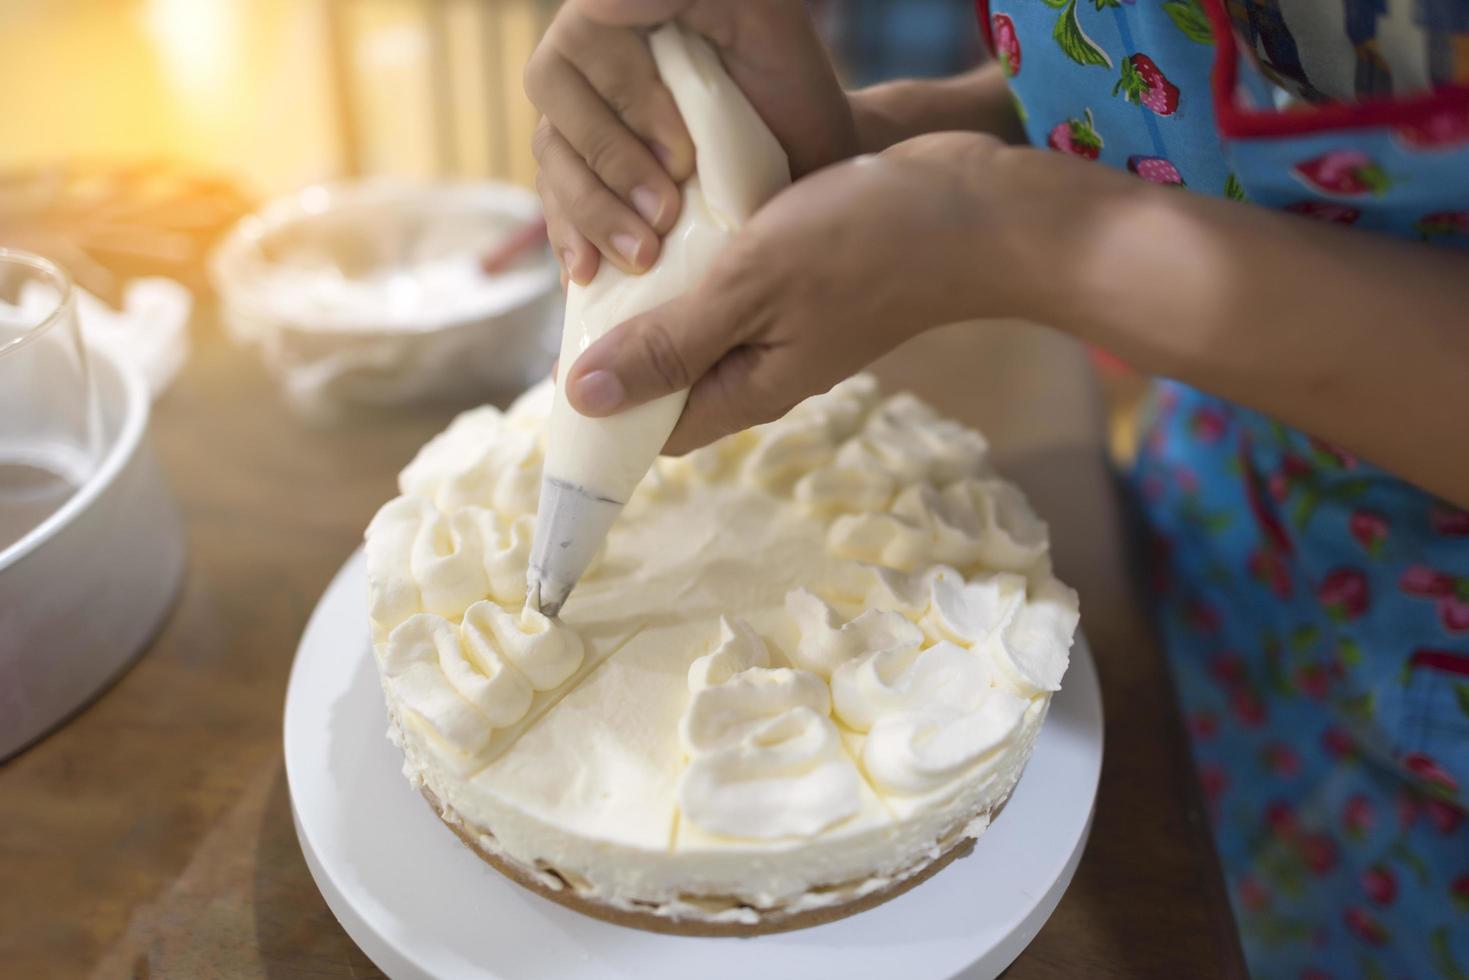 Mano de mujer decorando un pastel con una bolsa de crema pastelera foto